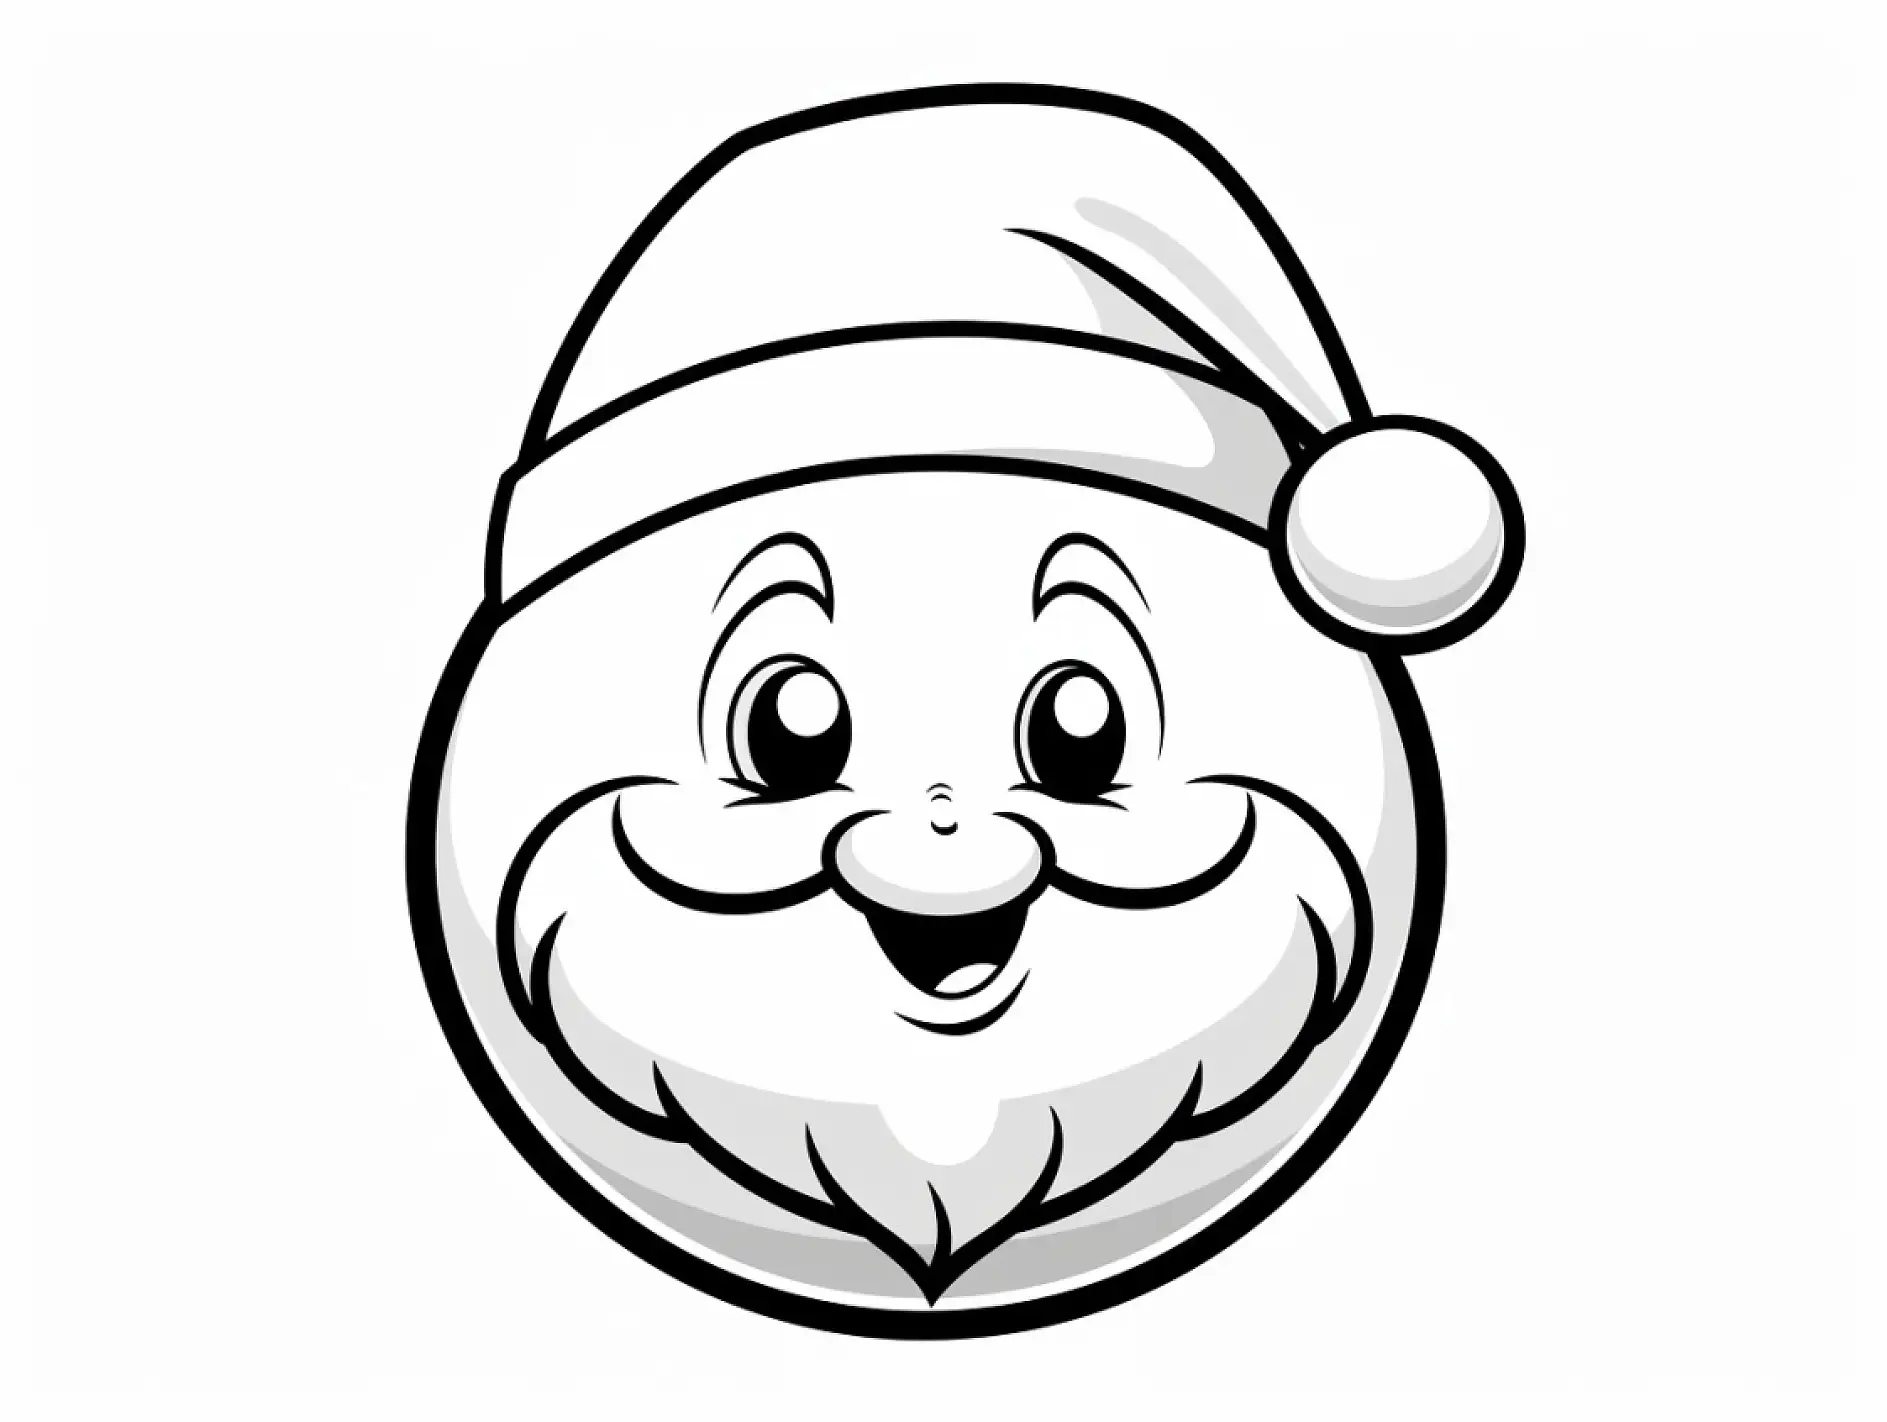 Ausmalbild Gesicht von Santa Claus auf Weihnachtskugel